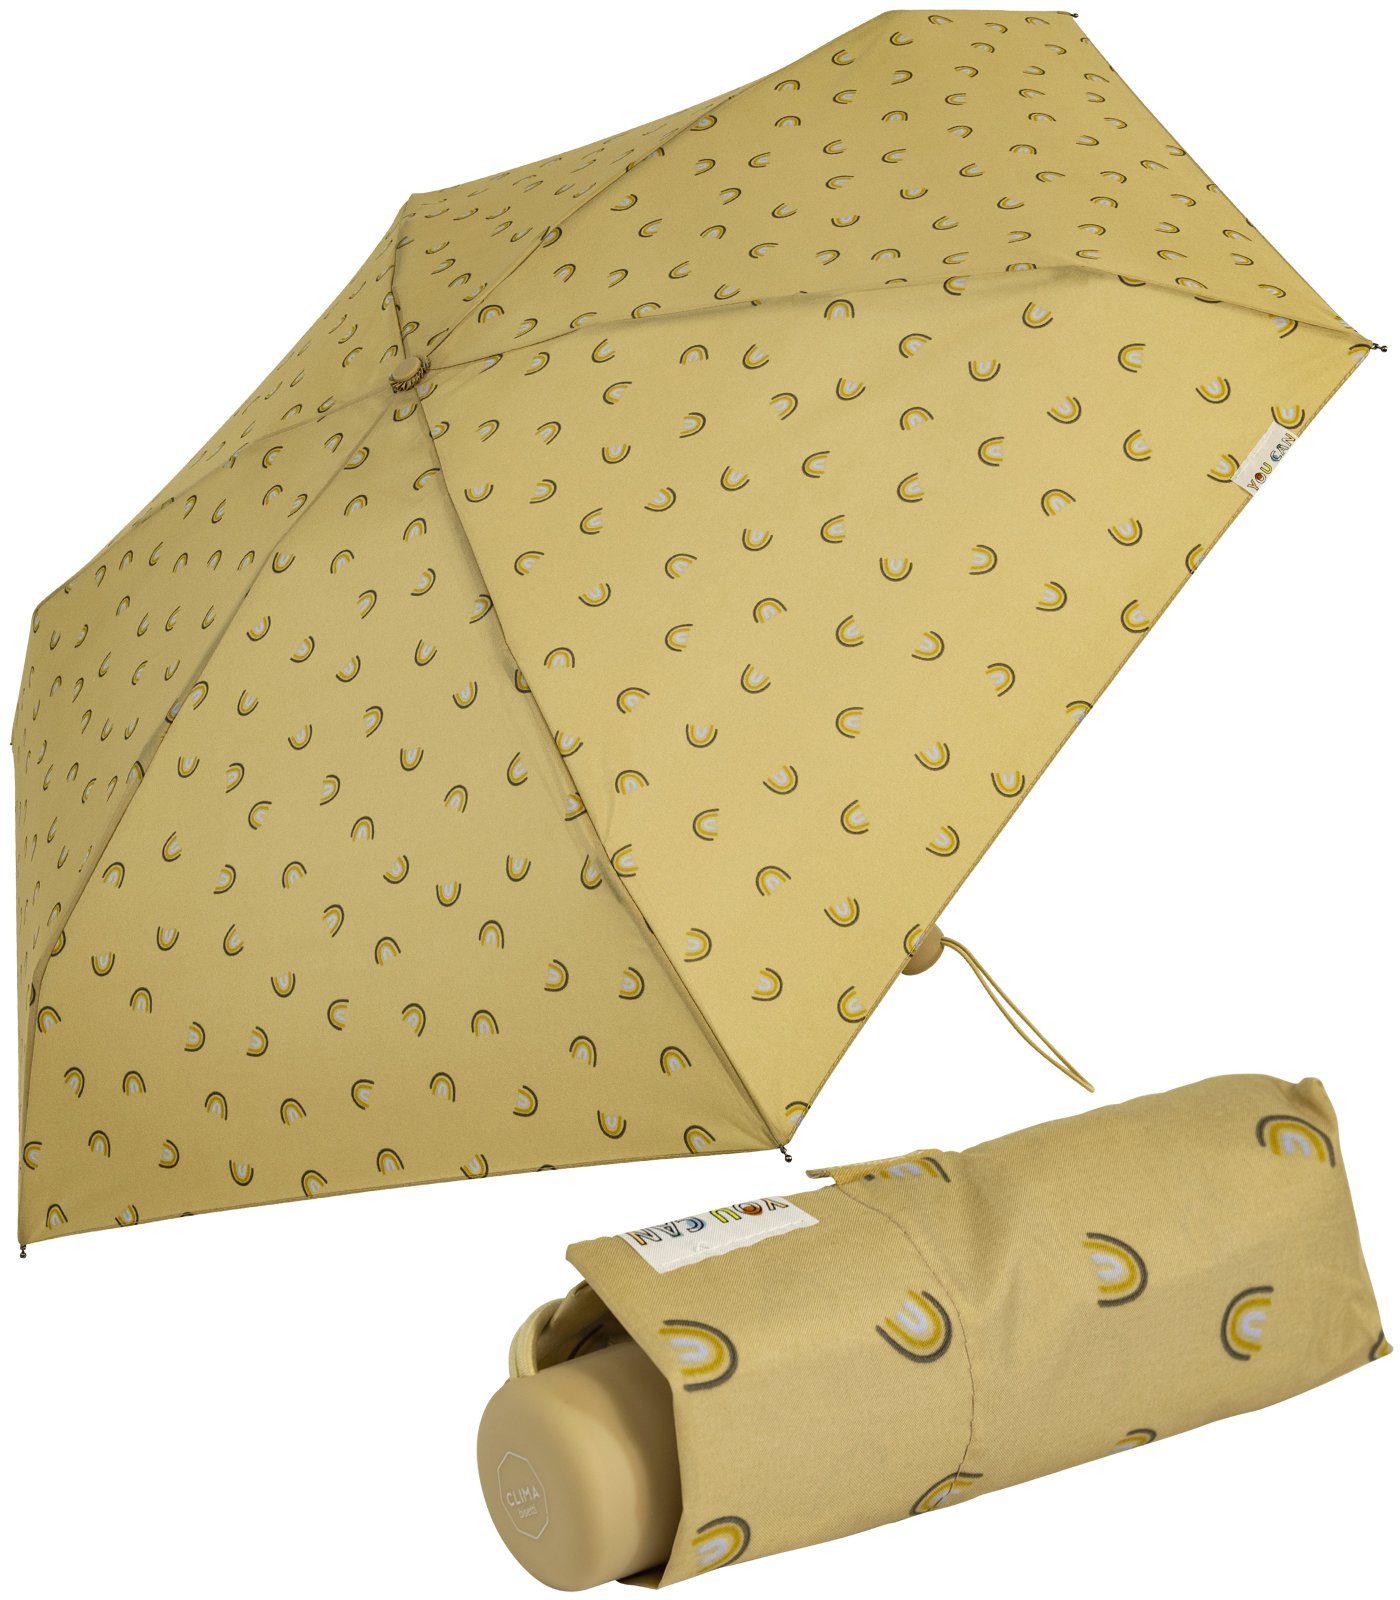 bisetti Taschenregenschirm Damen-Regenschirm, klein, stabil, kompakt, mit Handöffner, gedeckte Farben mit Bögen-Motiv - hellbraun beige